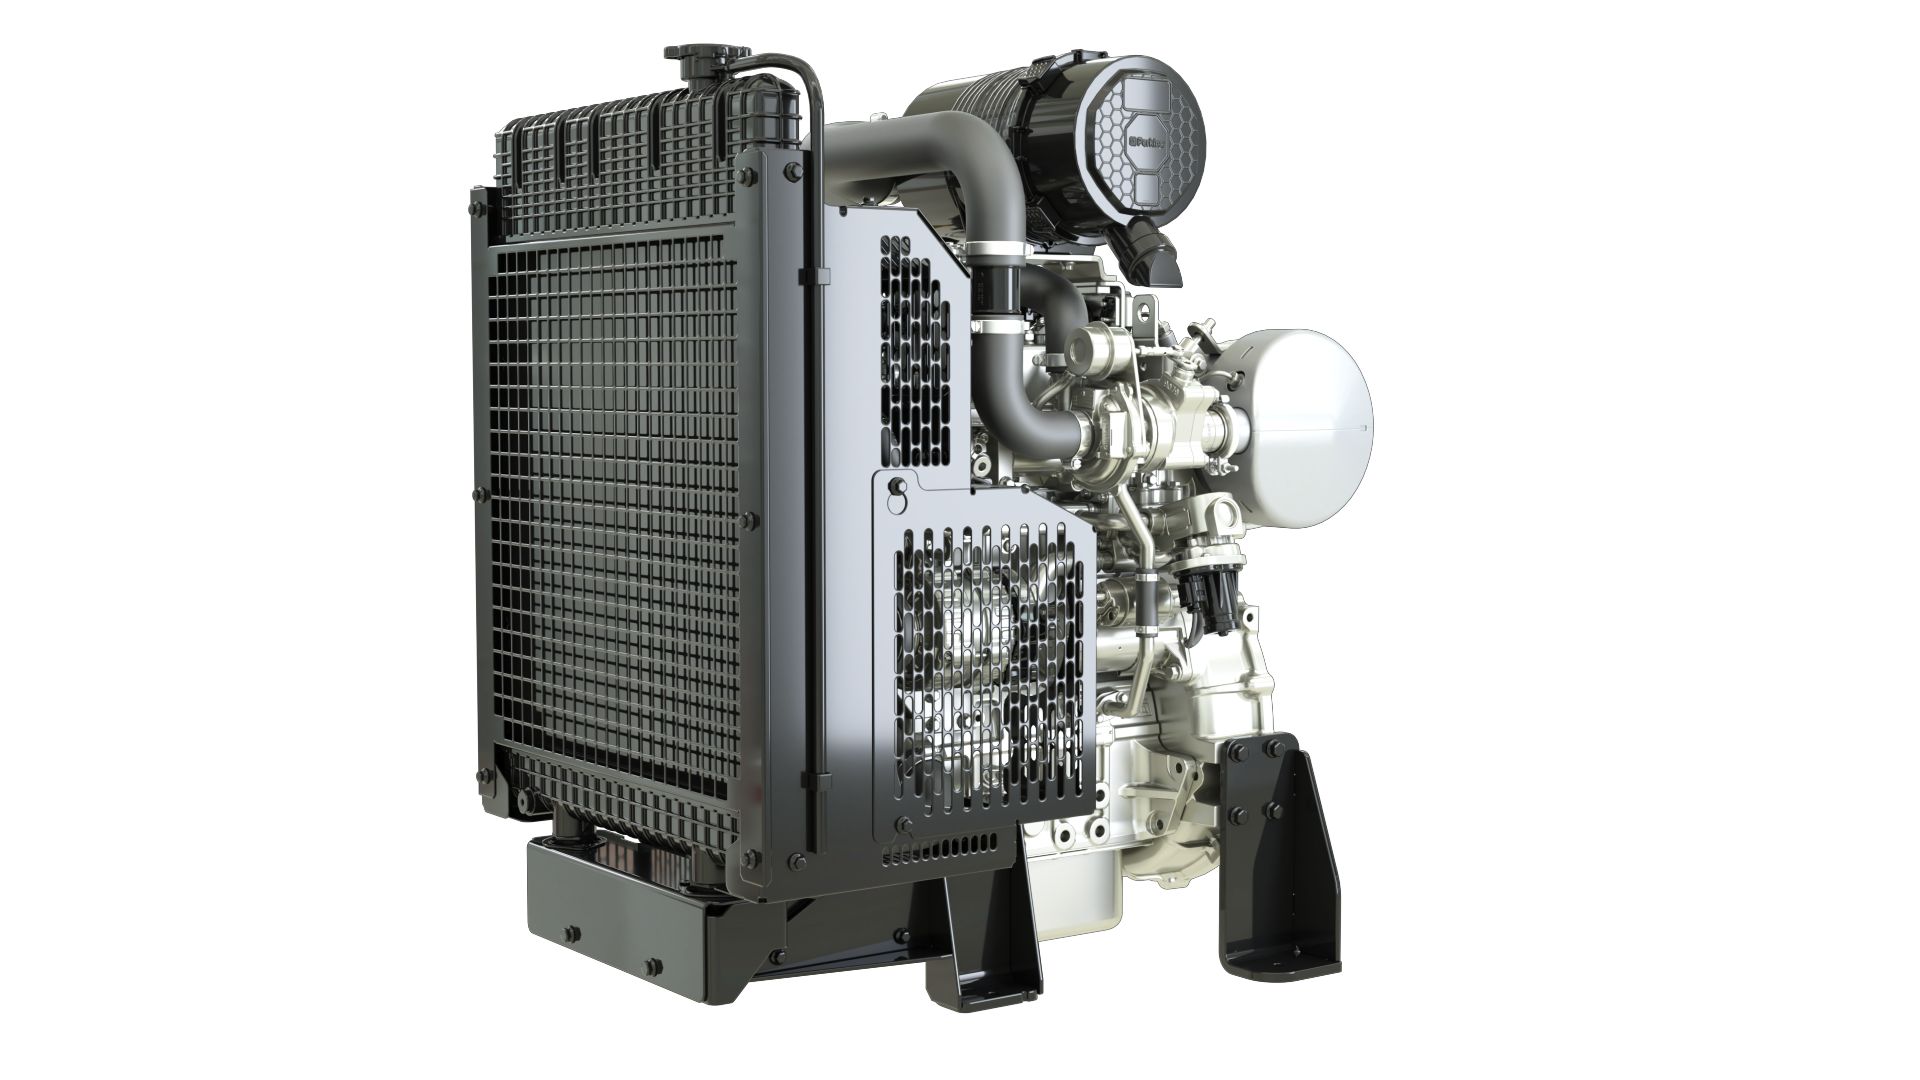 1104C-44 Industrial Diesel Engines